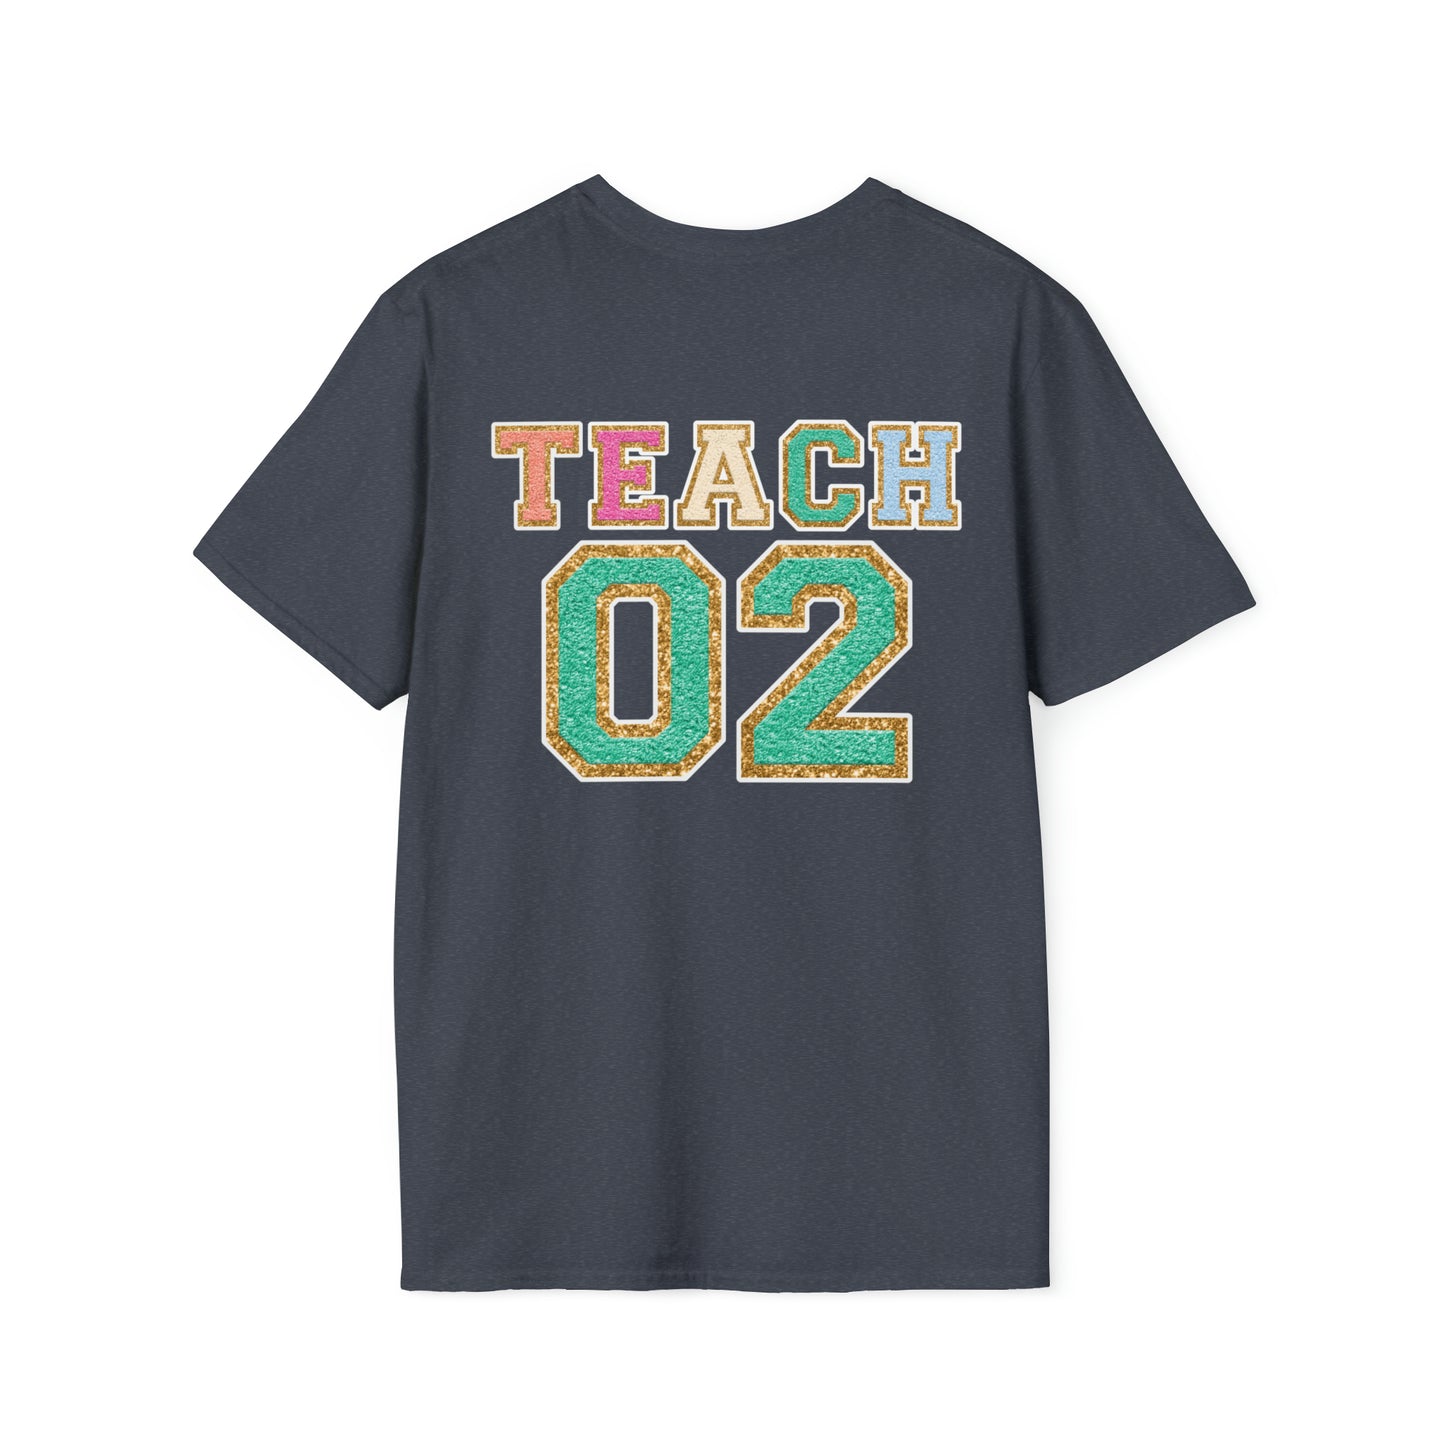 "Varsity Teach Second Grade" Teacher T-shirt